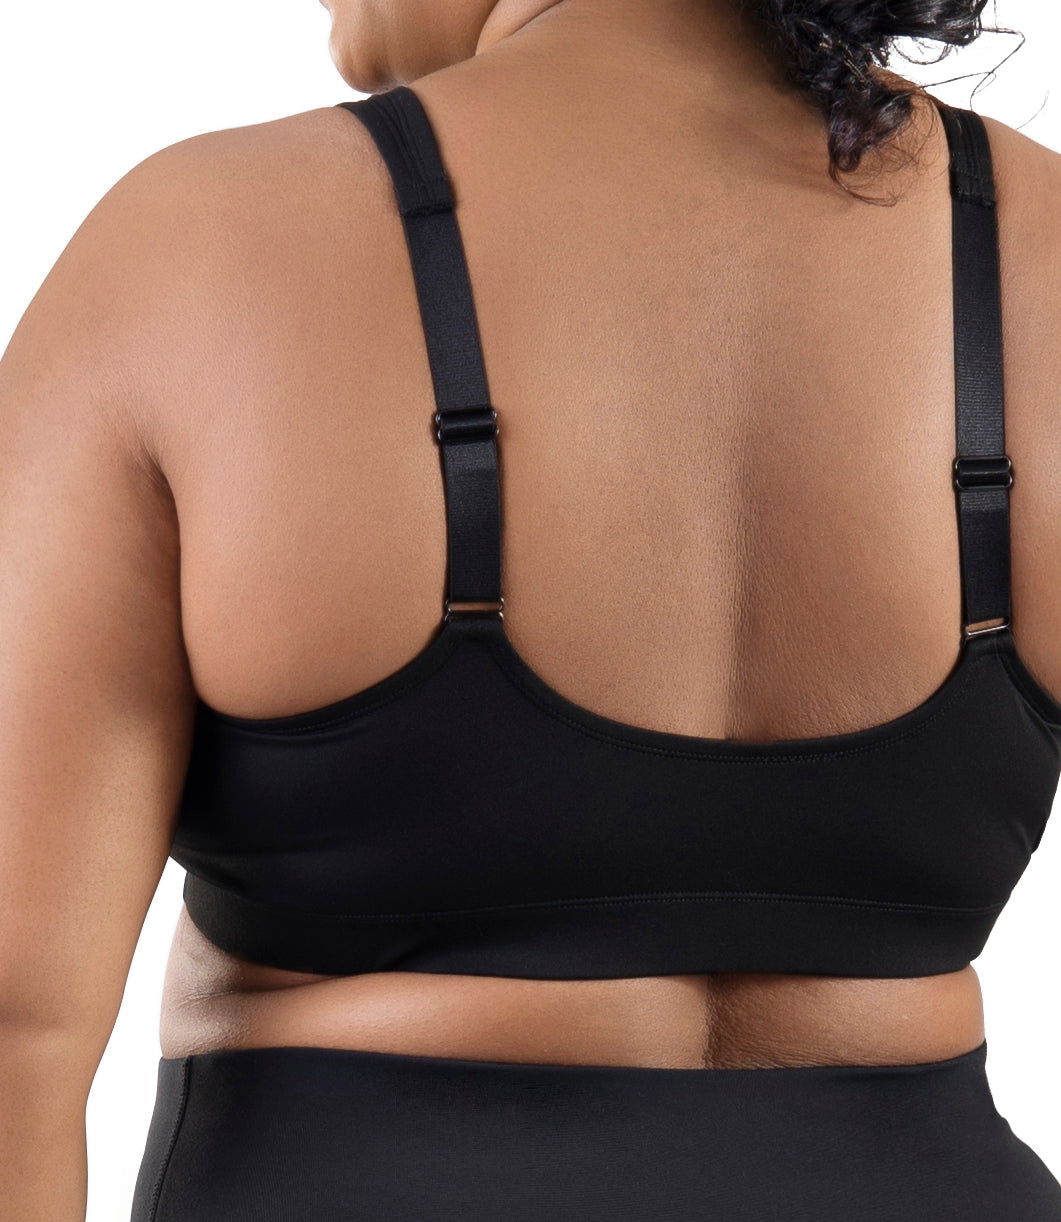 Jtckarpu Zipper Sports Bras for Women Plus Size Gym Zip Up Running